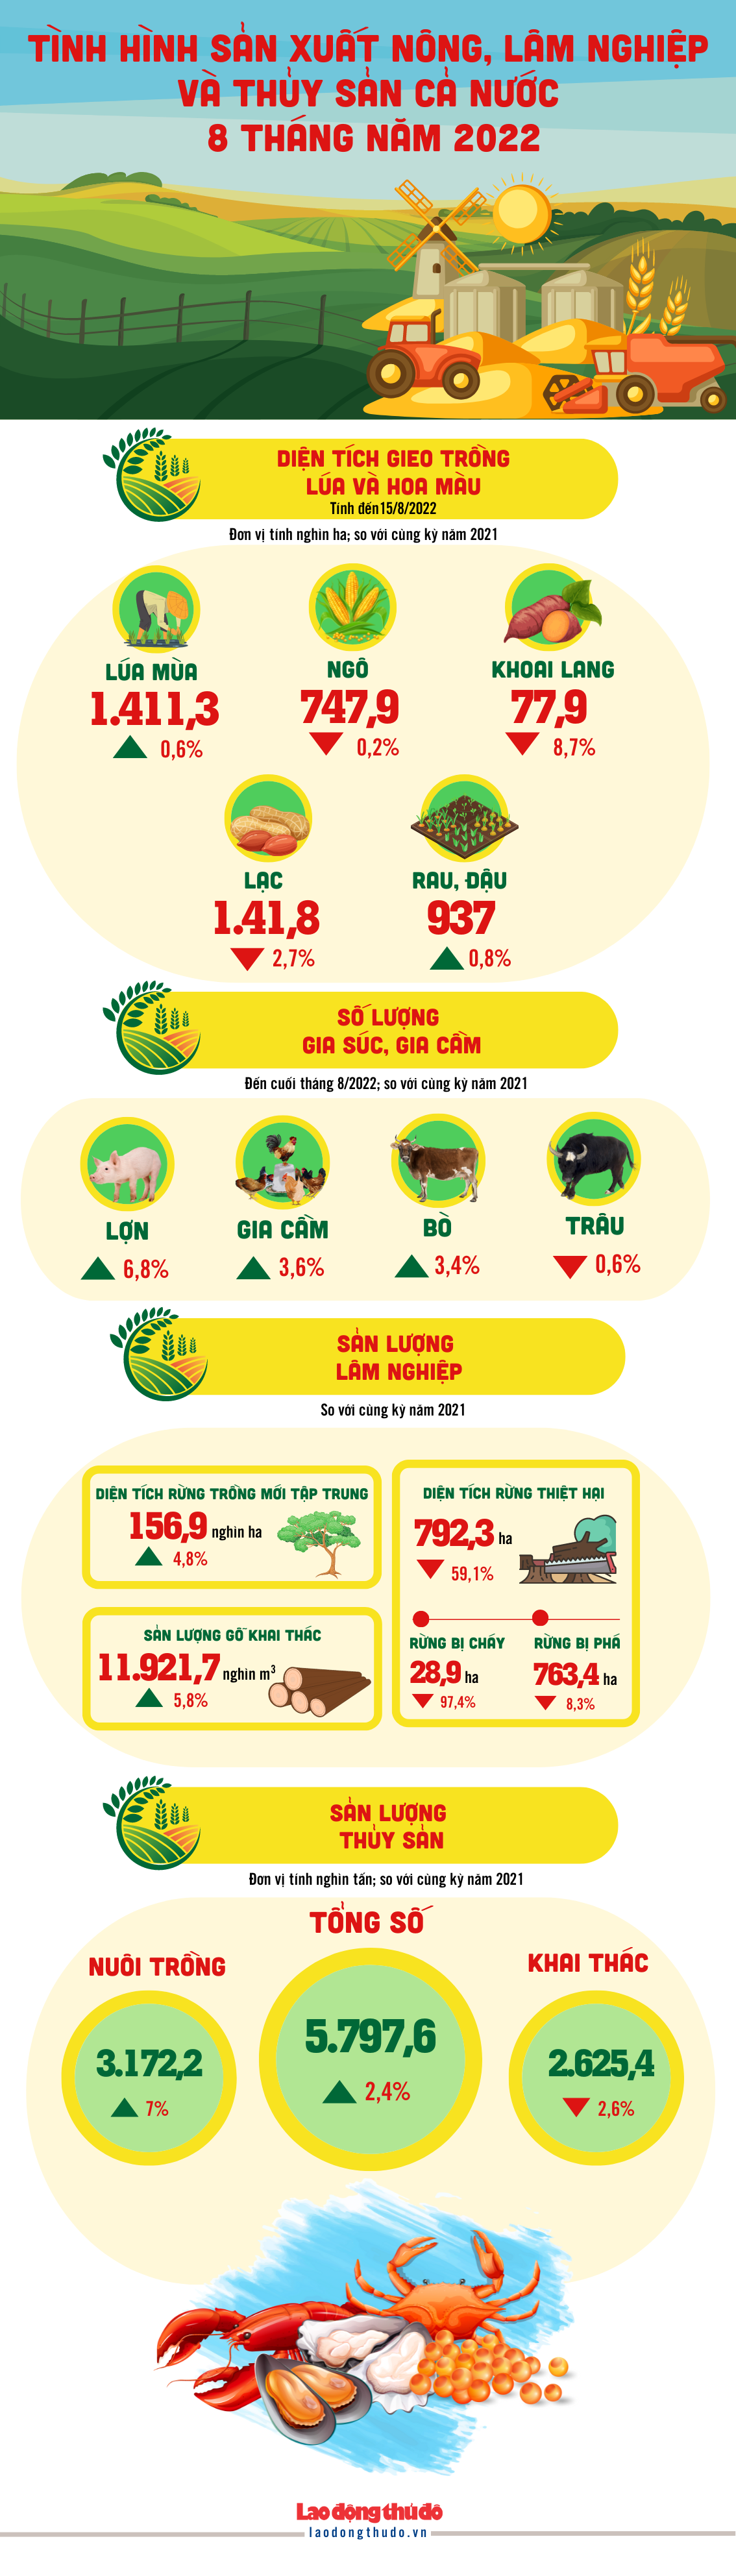 [Infographic] Tình hình sản xuất nông, lâm nghiệp và thủy sản cả nước 8 tháng năm 2022